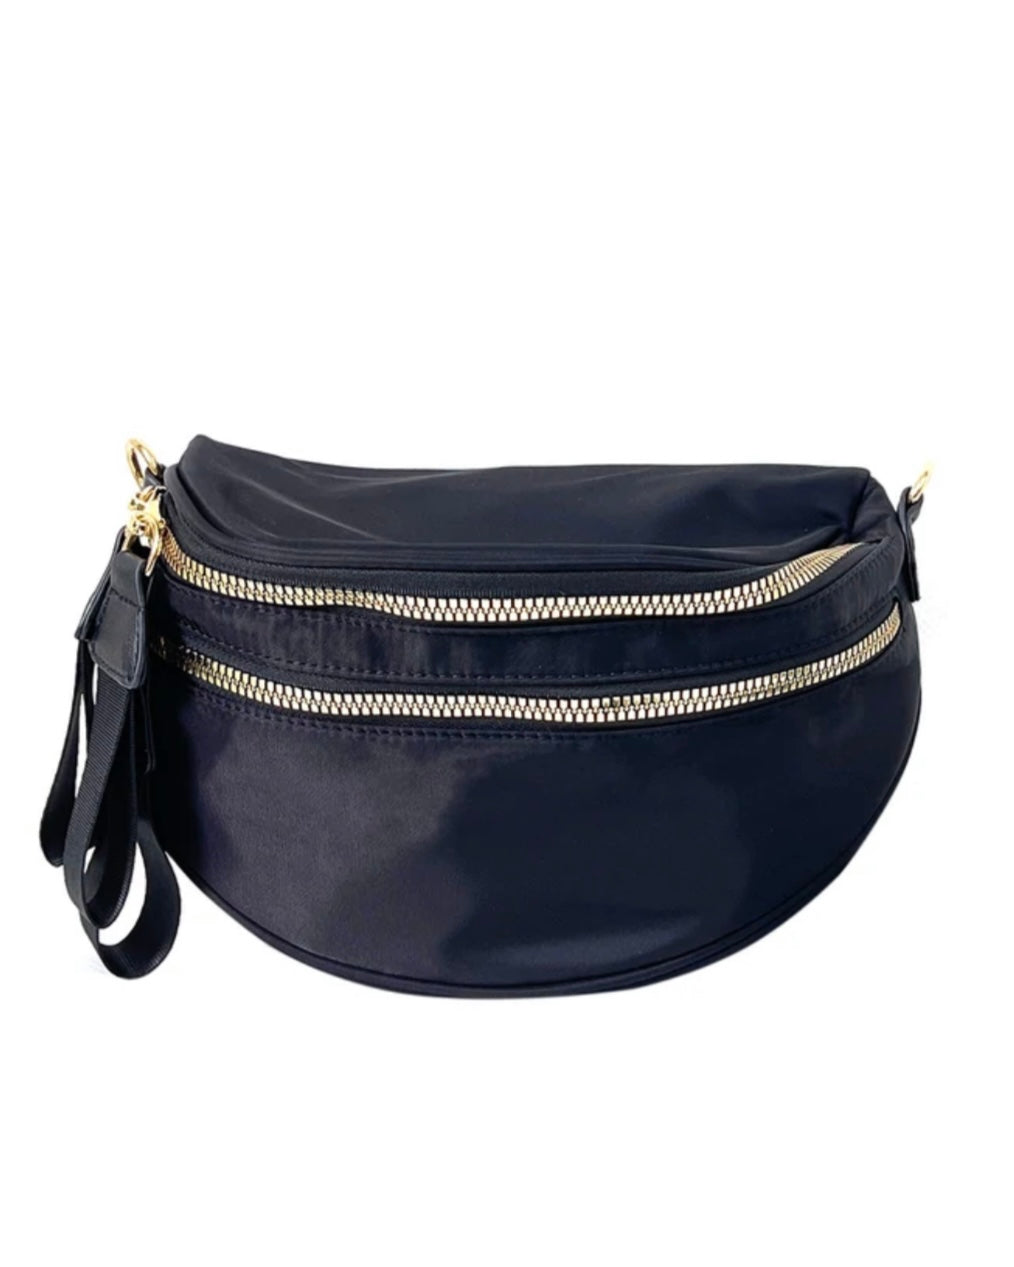 Waist Bag Oxford- Cloth Fanny Pack Purse Large Phone Belt Bag Pouch for  Women Men Teen Crossbody Waist Pack Shoulder Bag - AliExpress